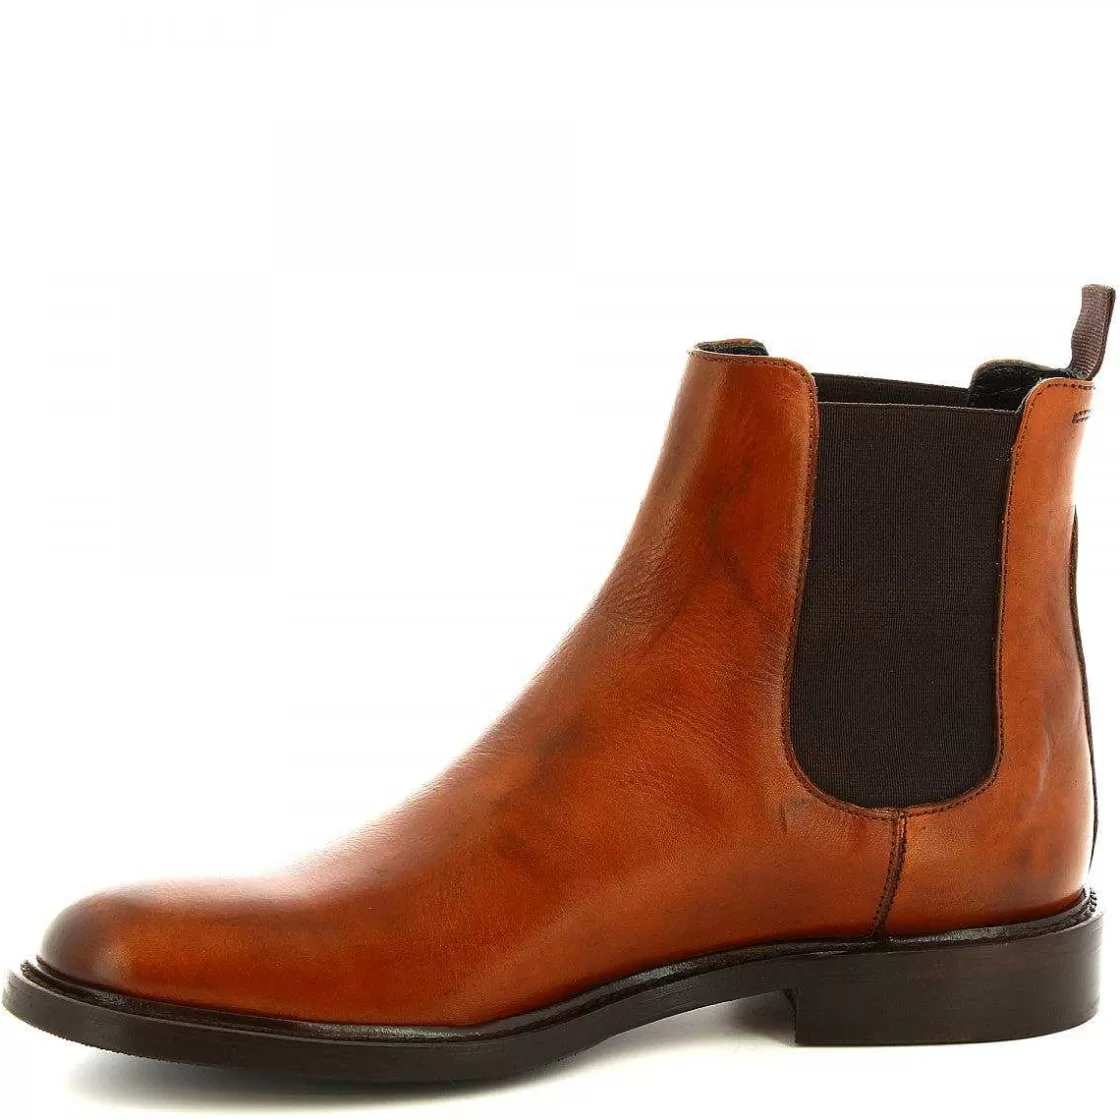 Leonardo Elegant Men'S Handmade Ankle Boots In Tan Calf Leather. Cheap